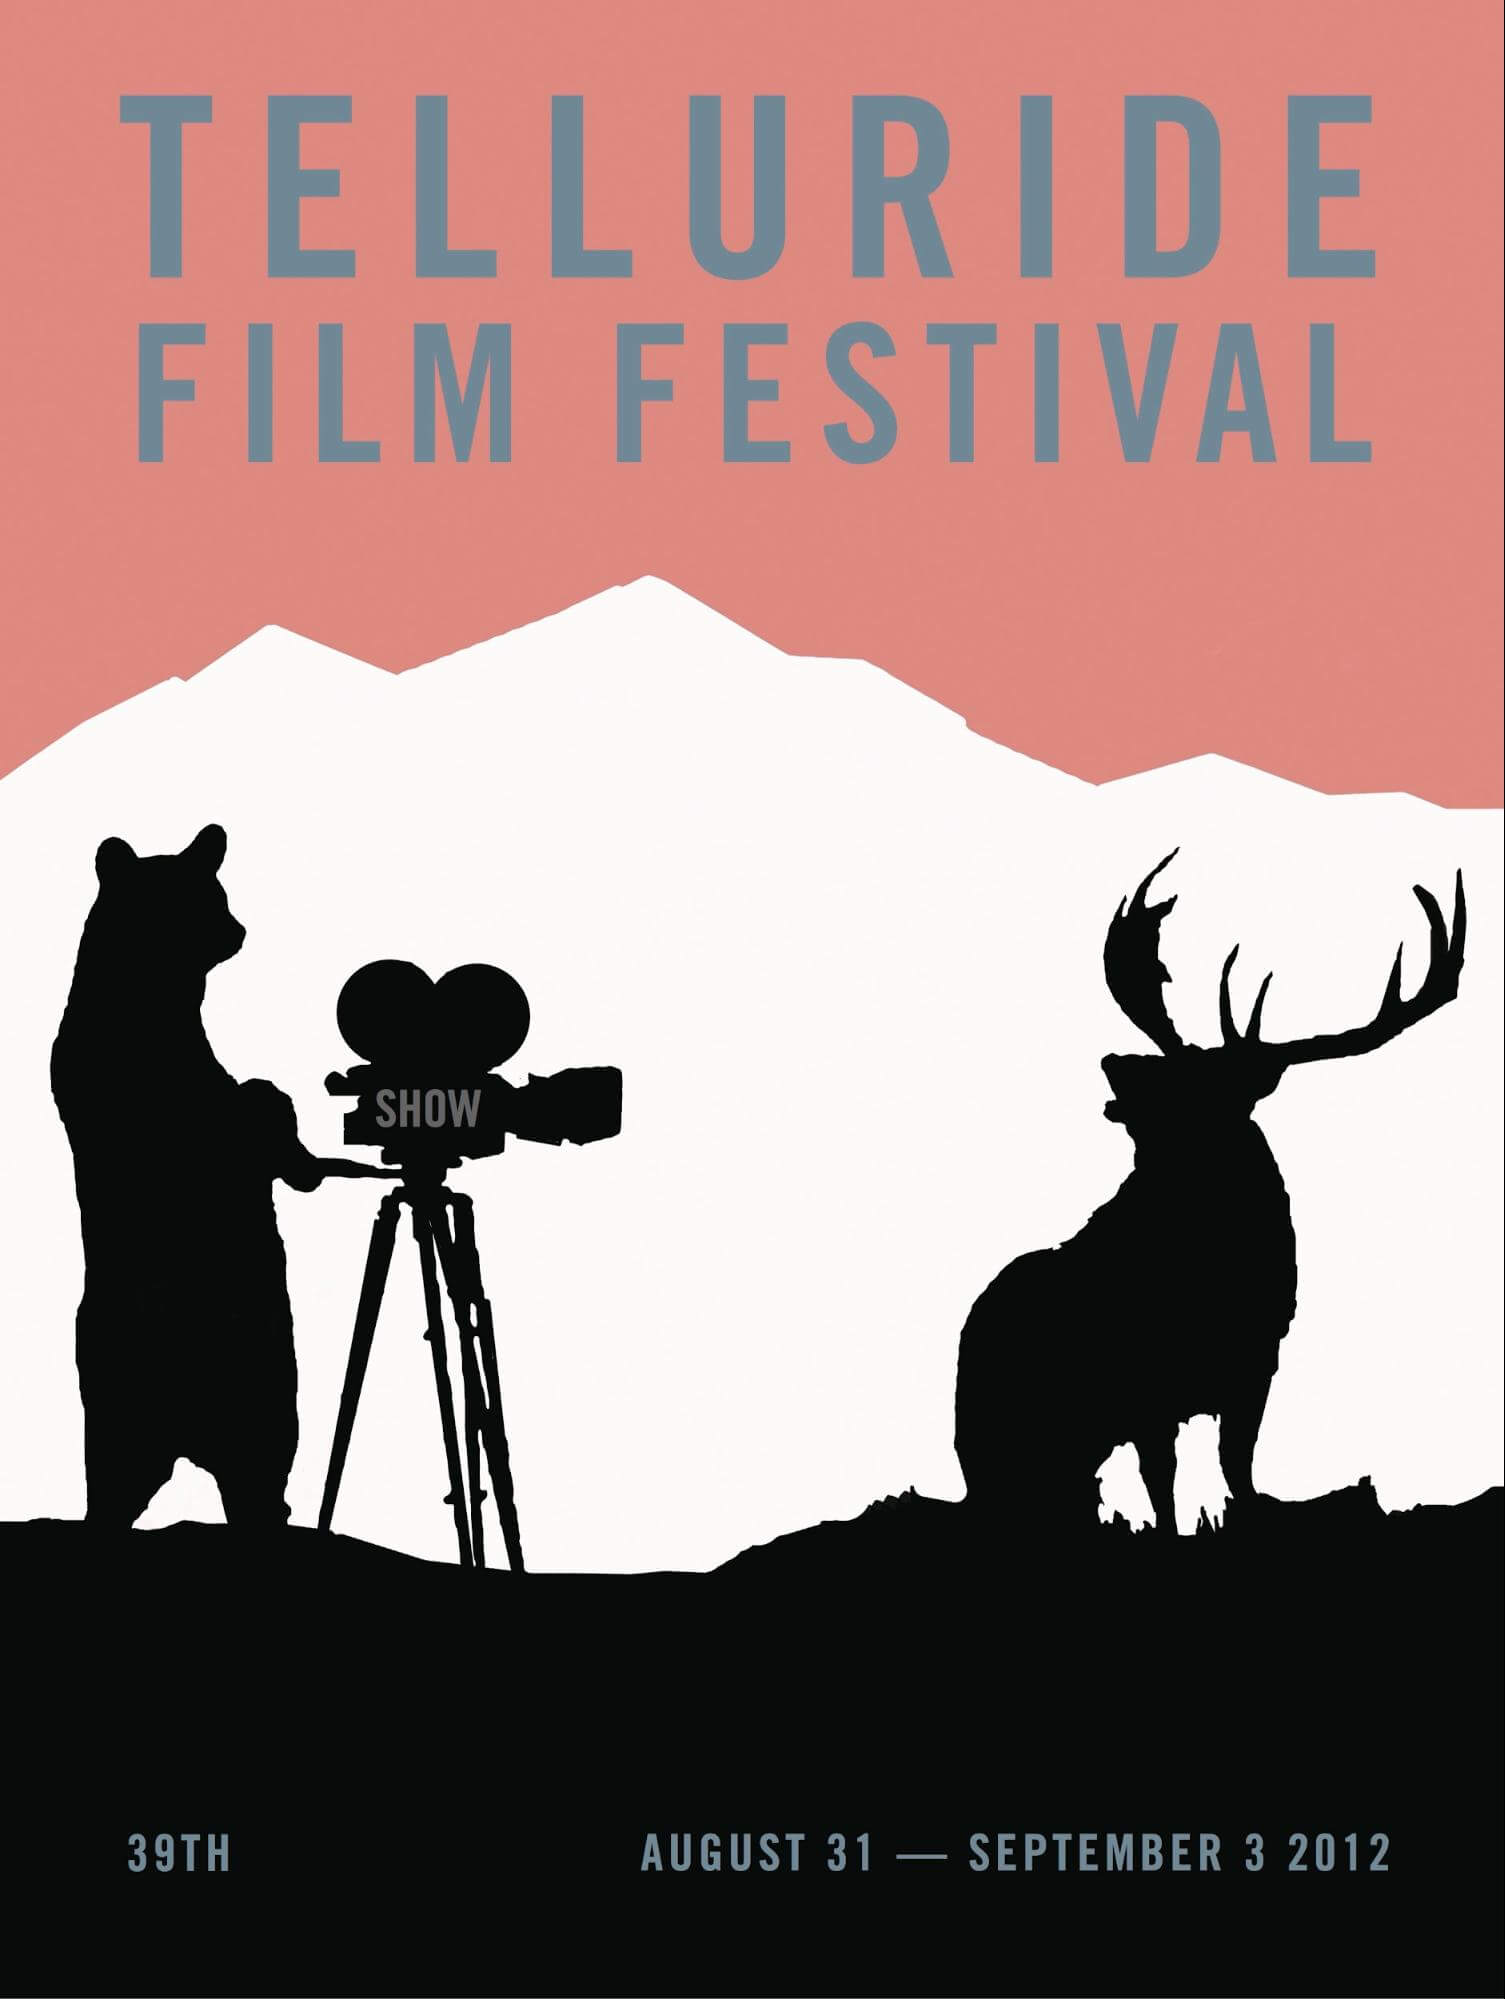 Best Film Festivals Telluride Film Festival StudioBinder